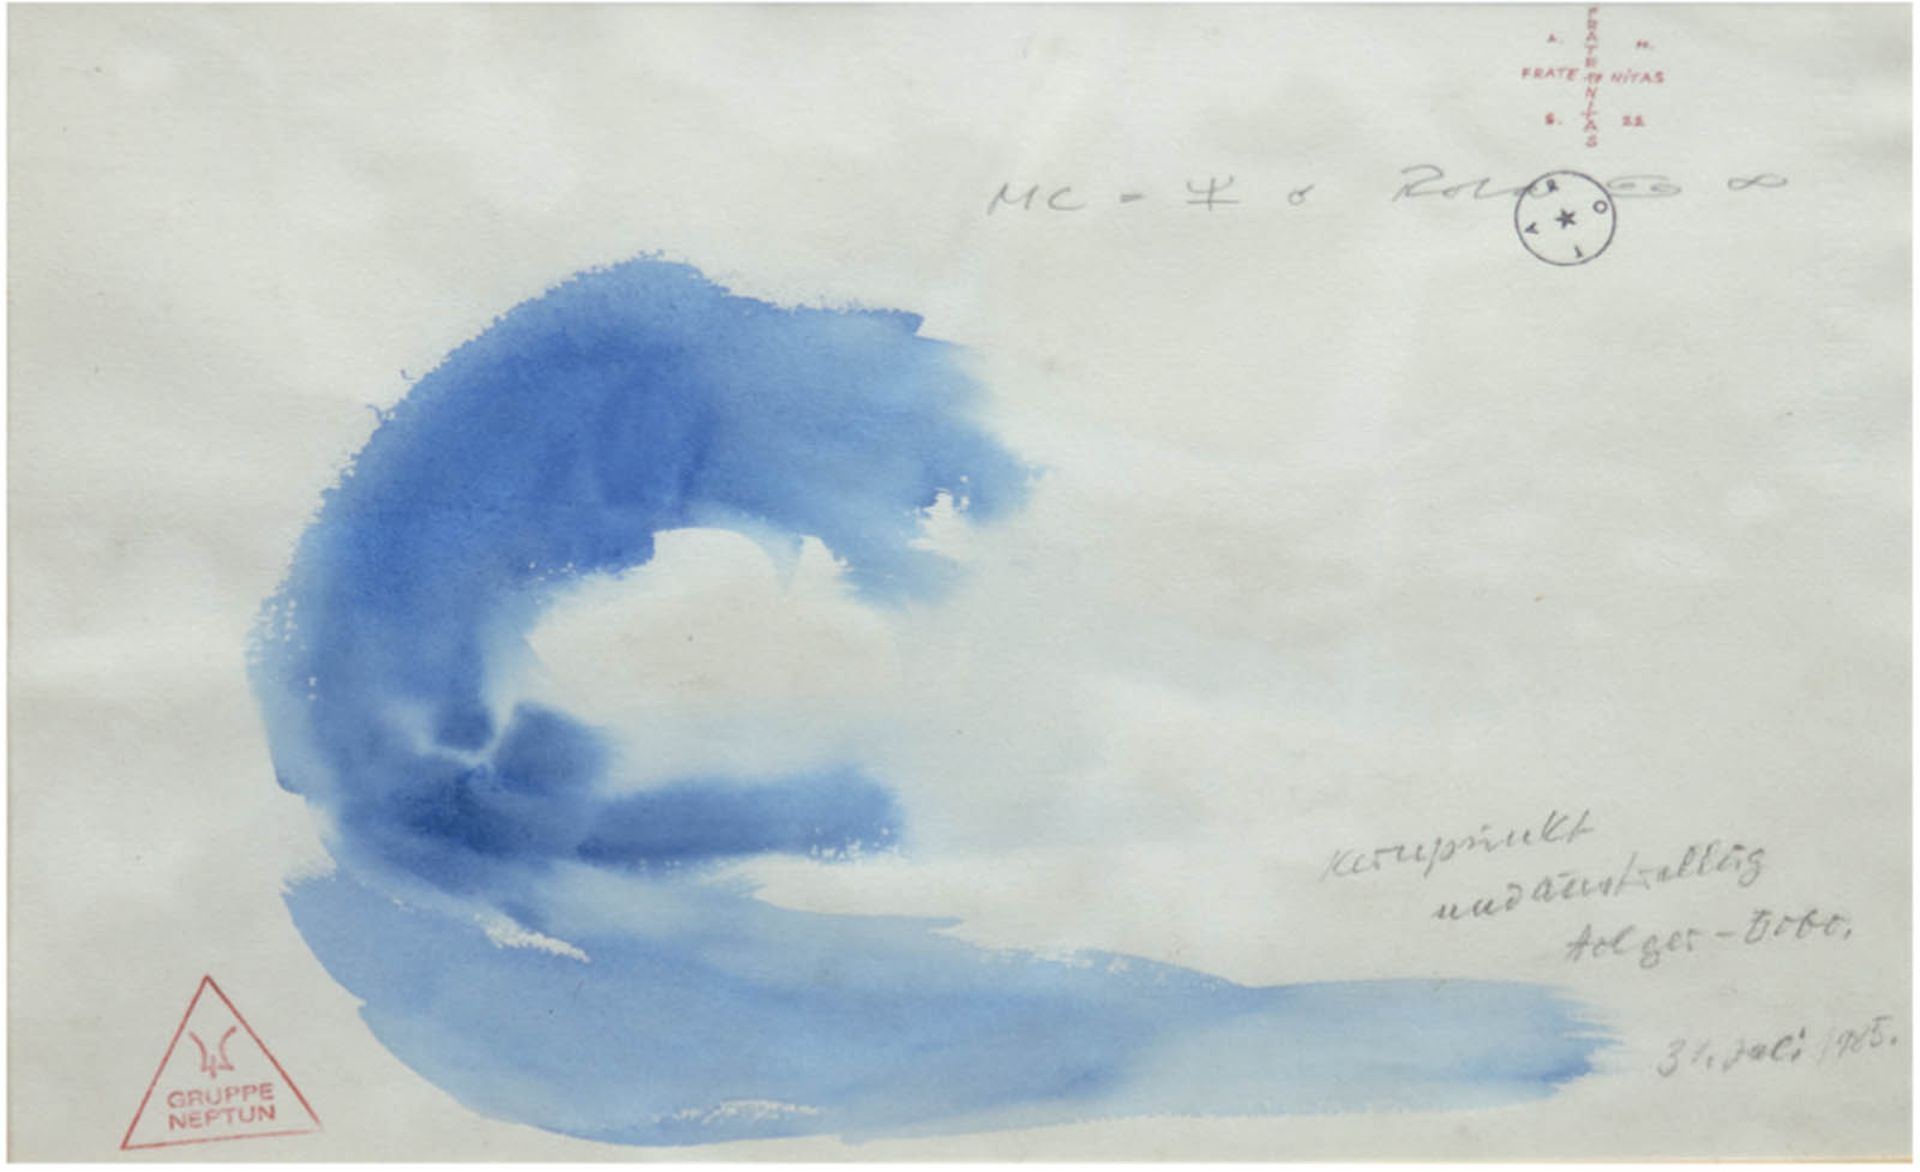 "Rota-Gruppe Neptun", Aquarell, mit handschriftlichen Aufzeichnungen, dat. 31.7.1985, 25,5x38